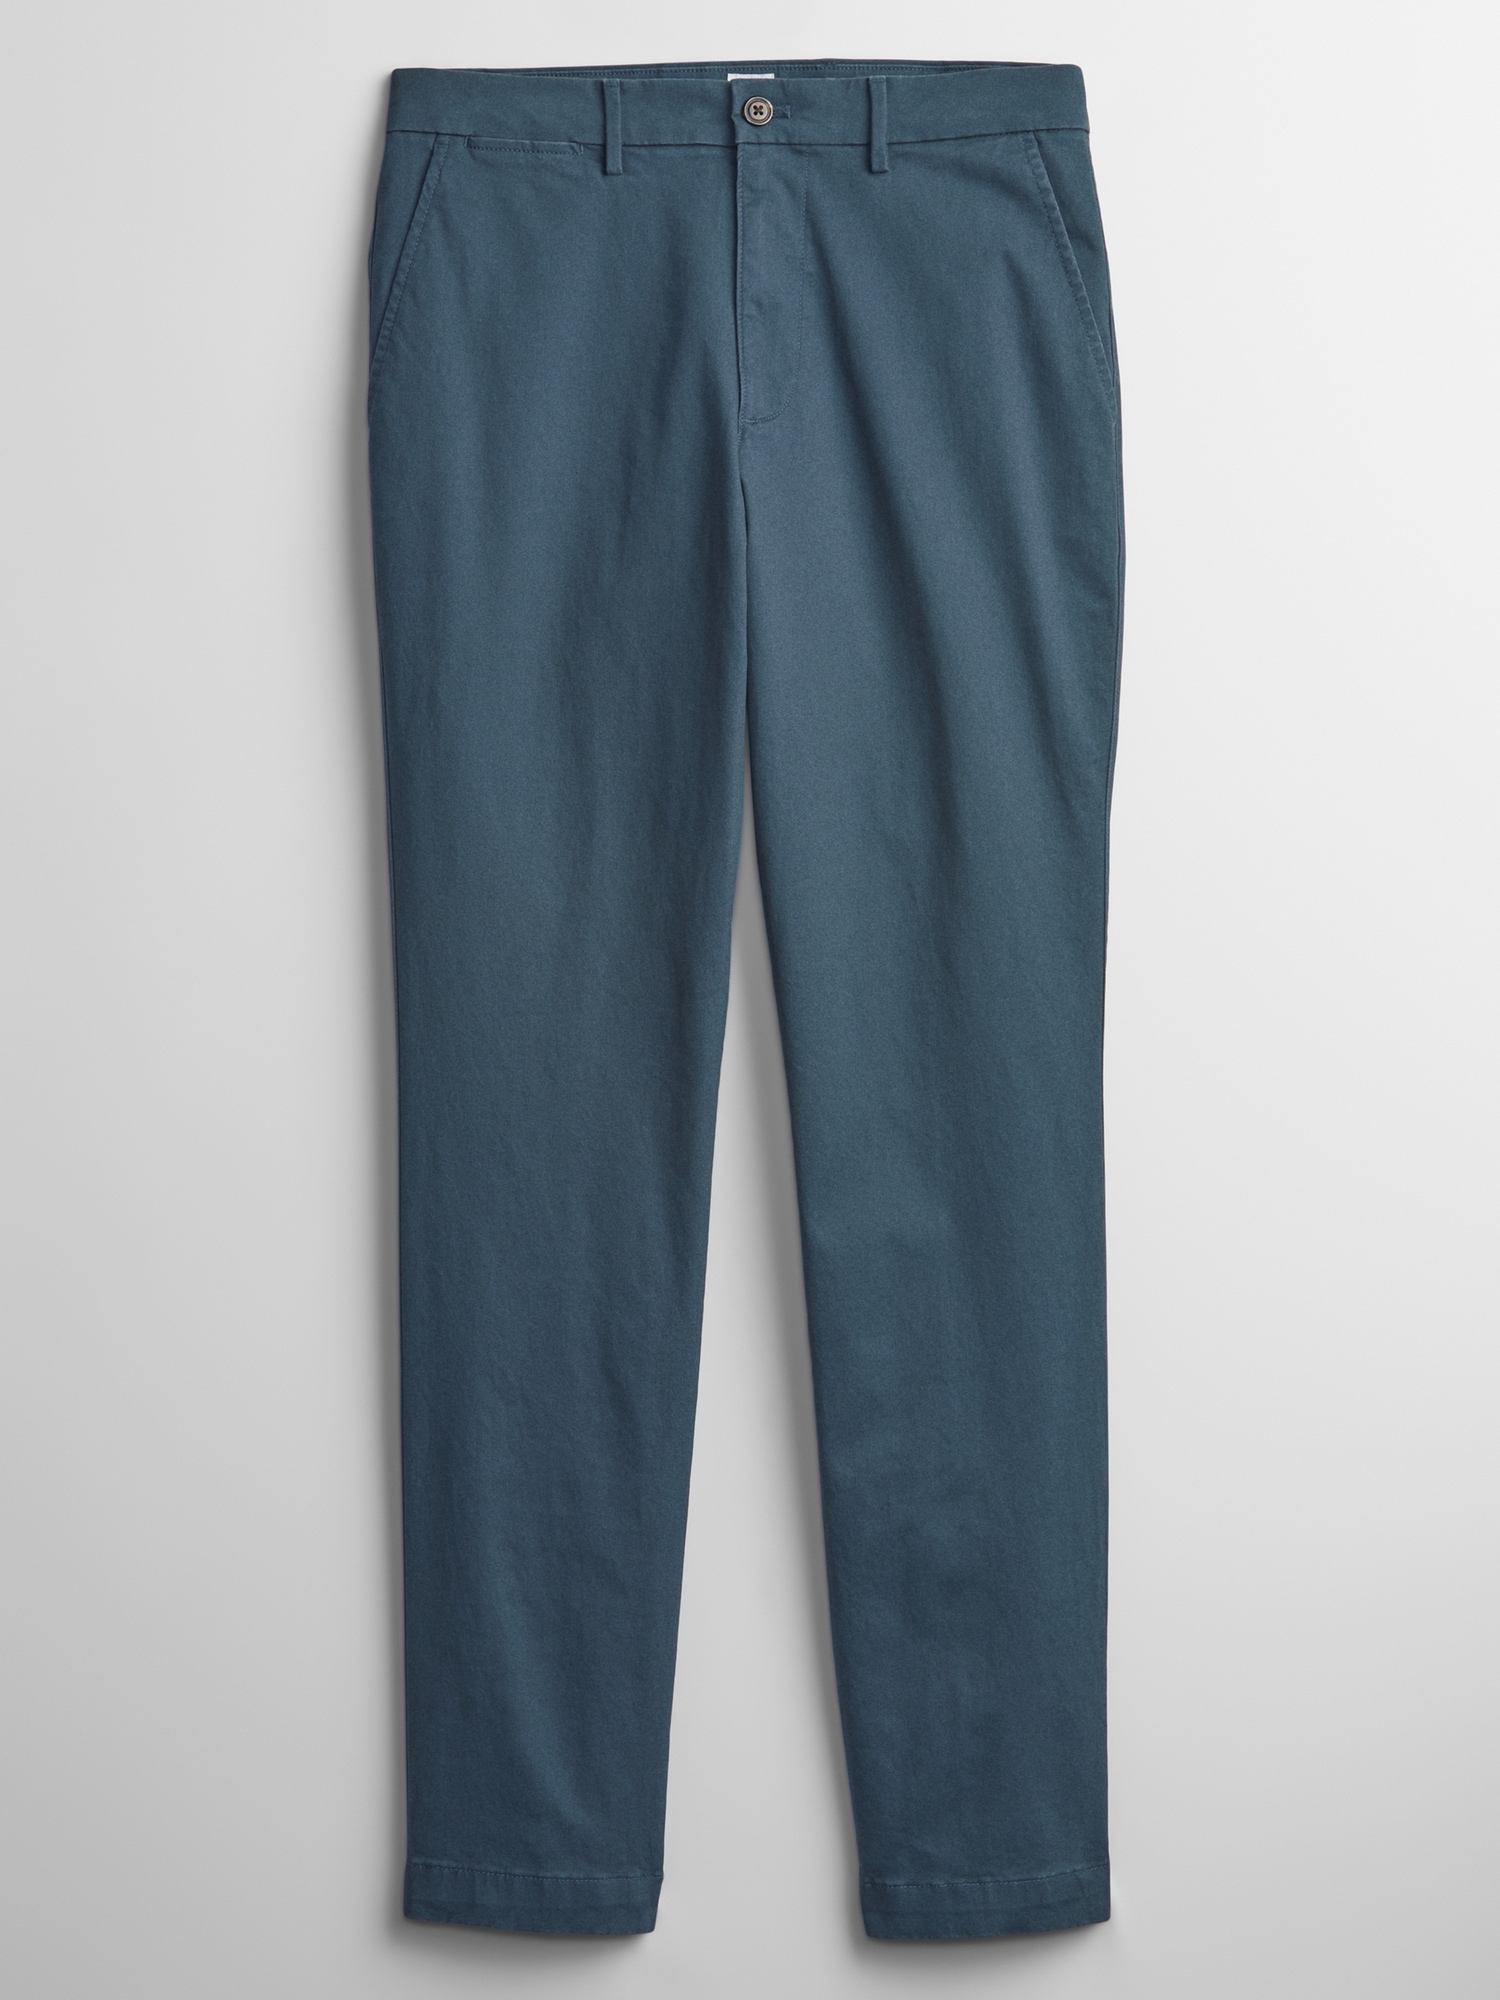 NWT MENS GAP GapFlex Essential Khakis Skinny Fit Pants Chino